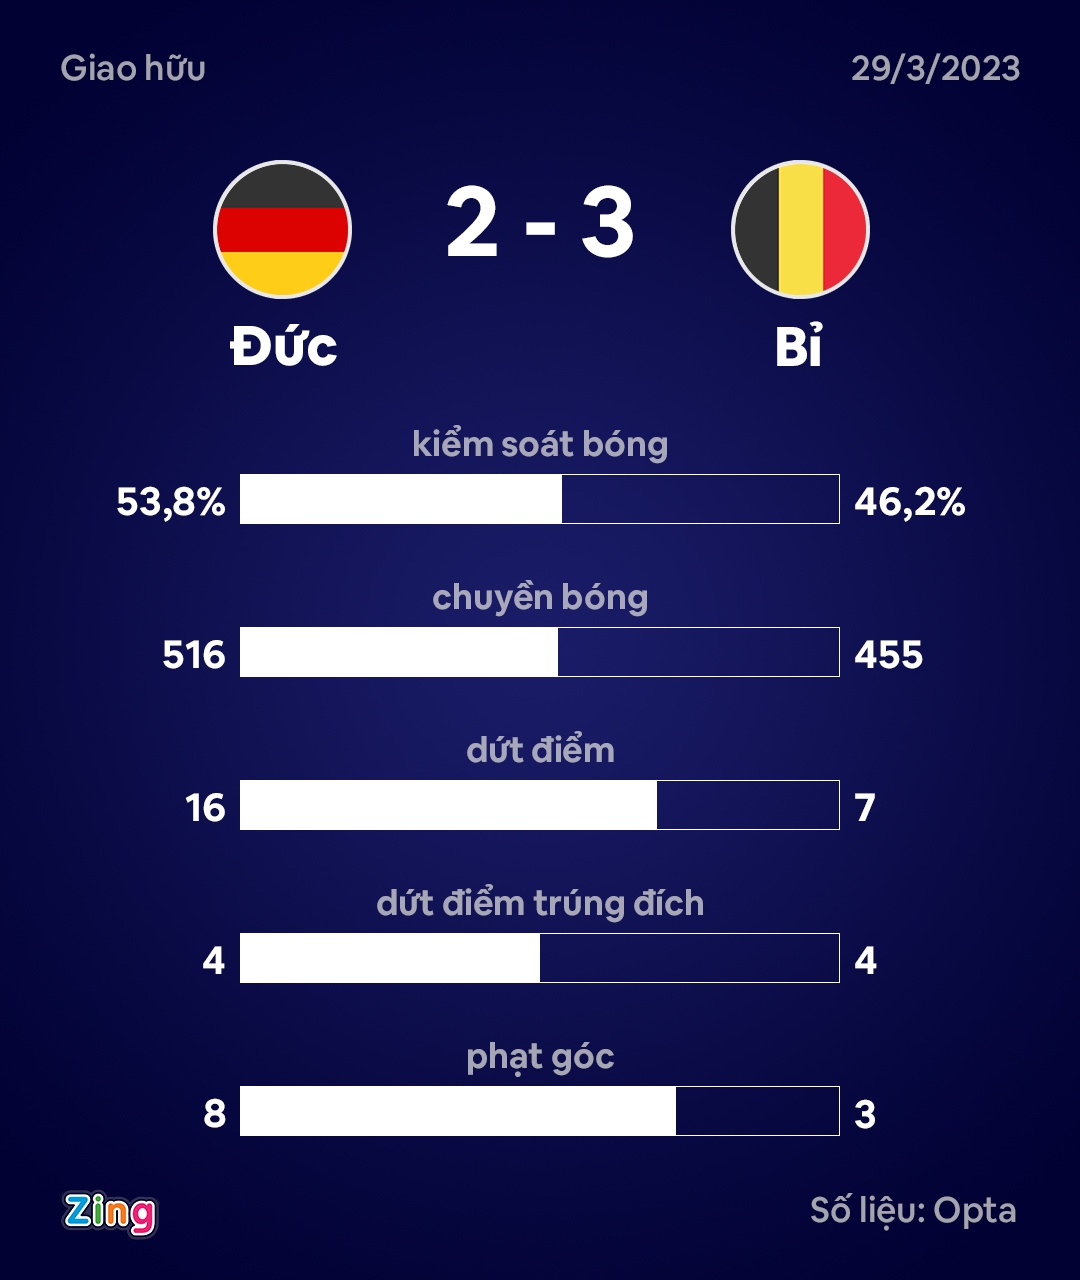 Lukaku ghi bàn giúp Bỉ lần đầu thắng Đức sau 69 năm